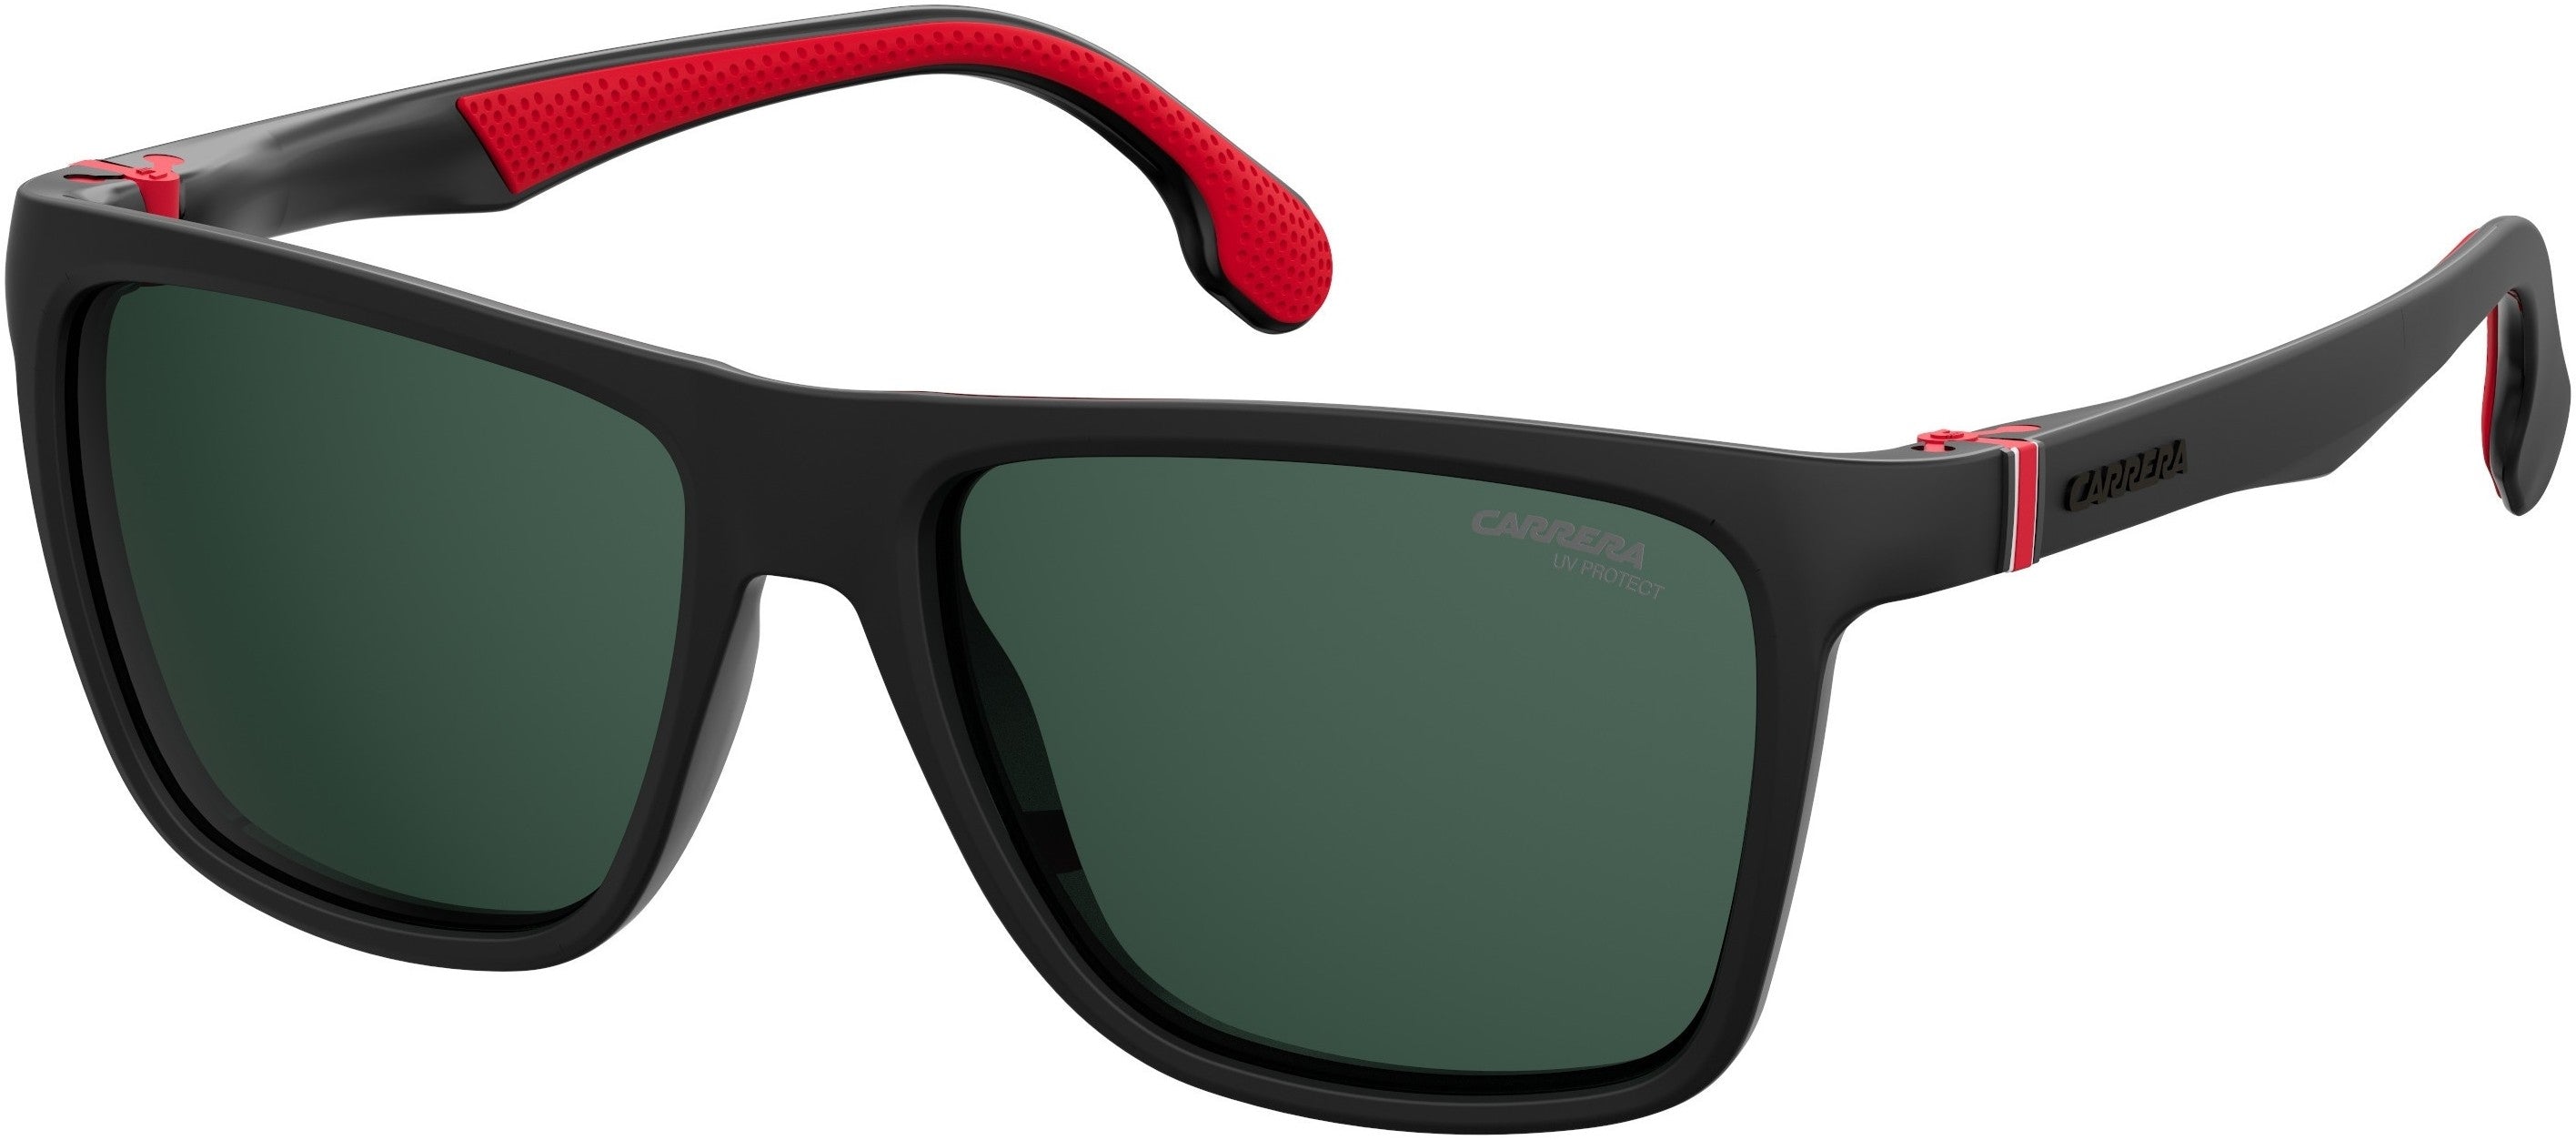  Carrera 5047/S Rectangular Sunglasses 0807-0807  Black (QT Green)